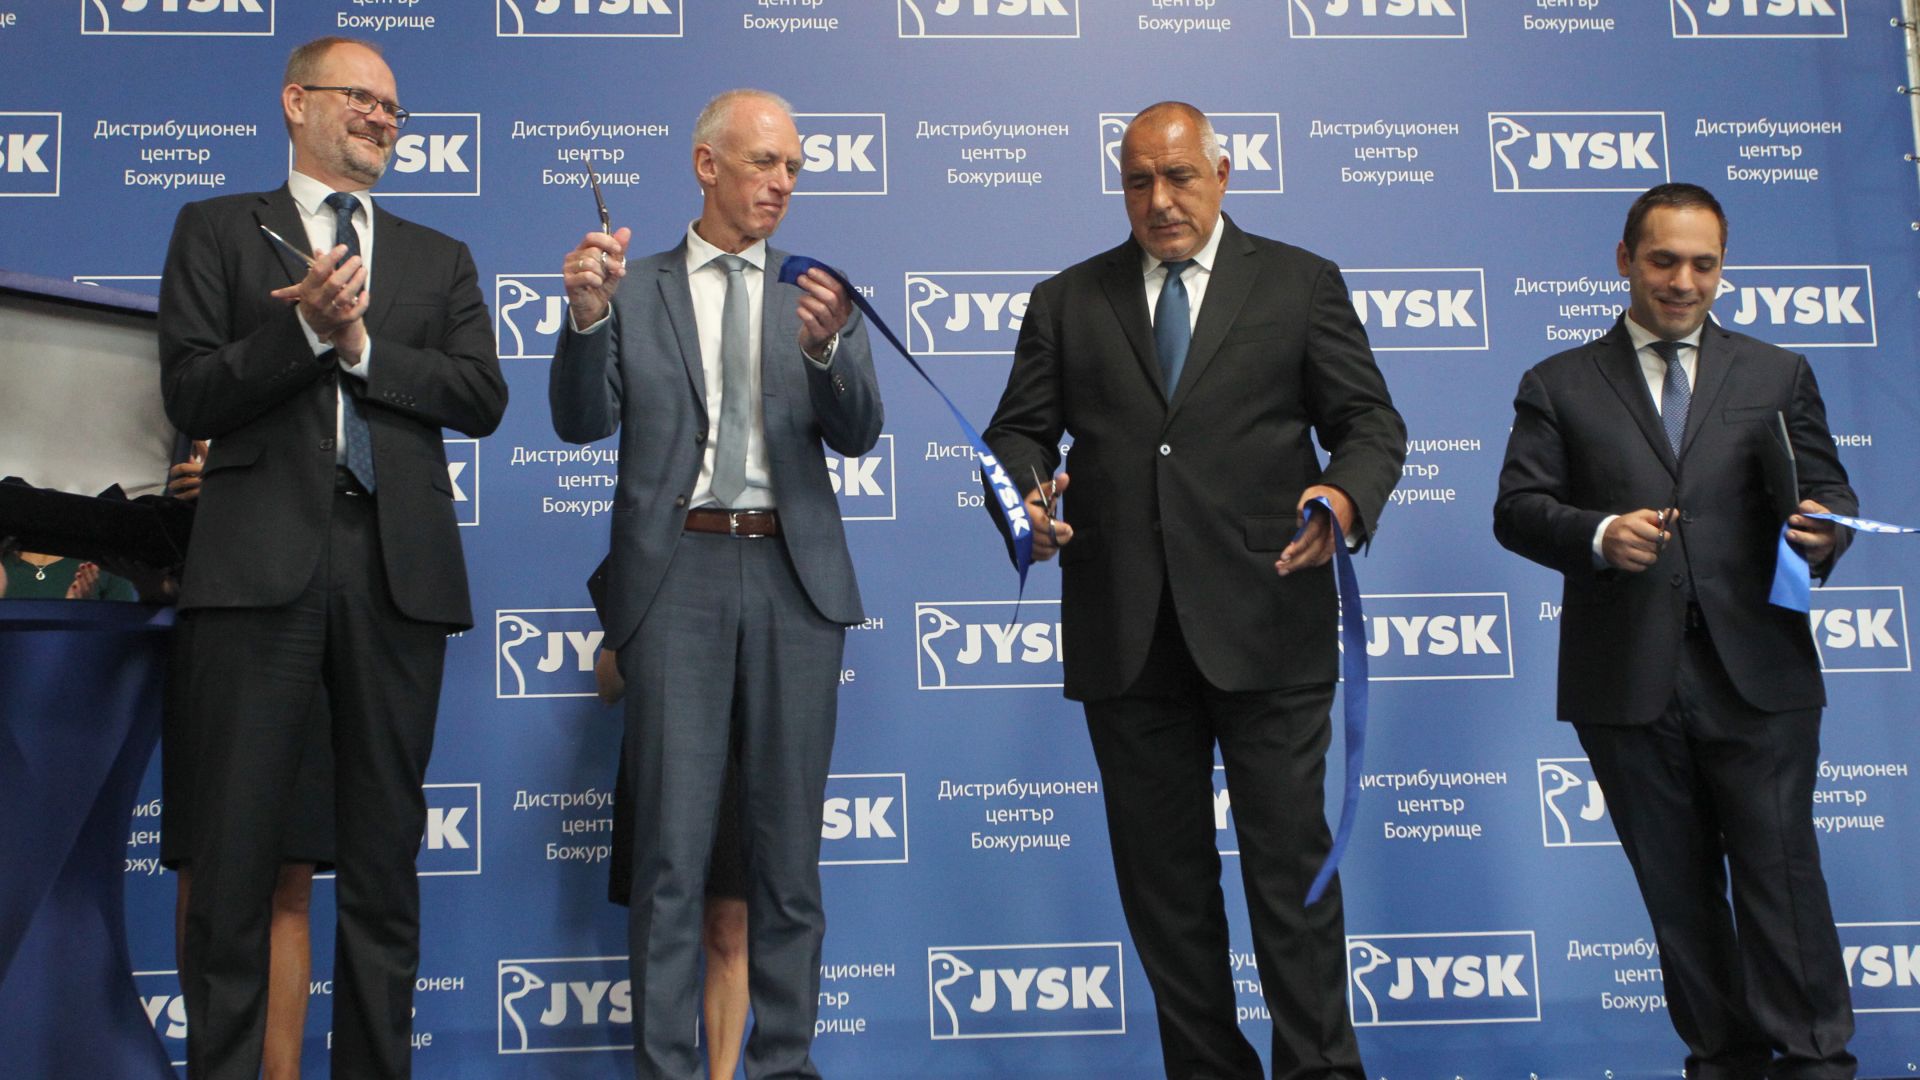 Посланикът на Дания (най-вляво) и премиерът на България прерязват лентата